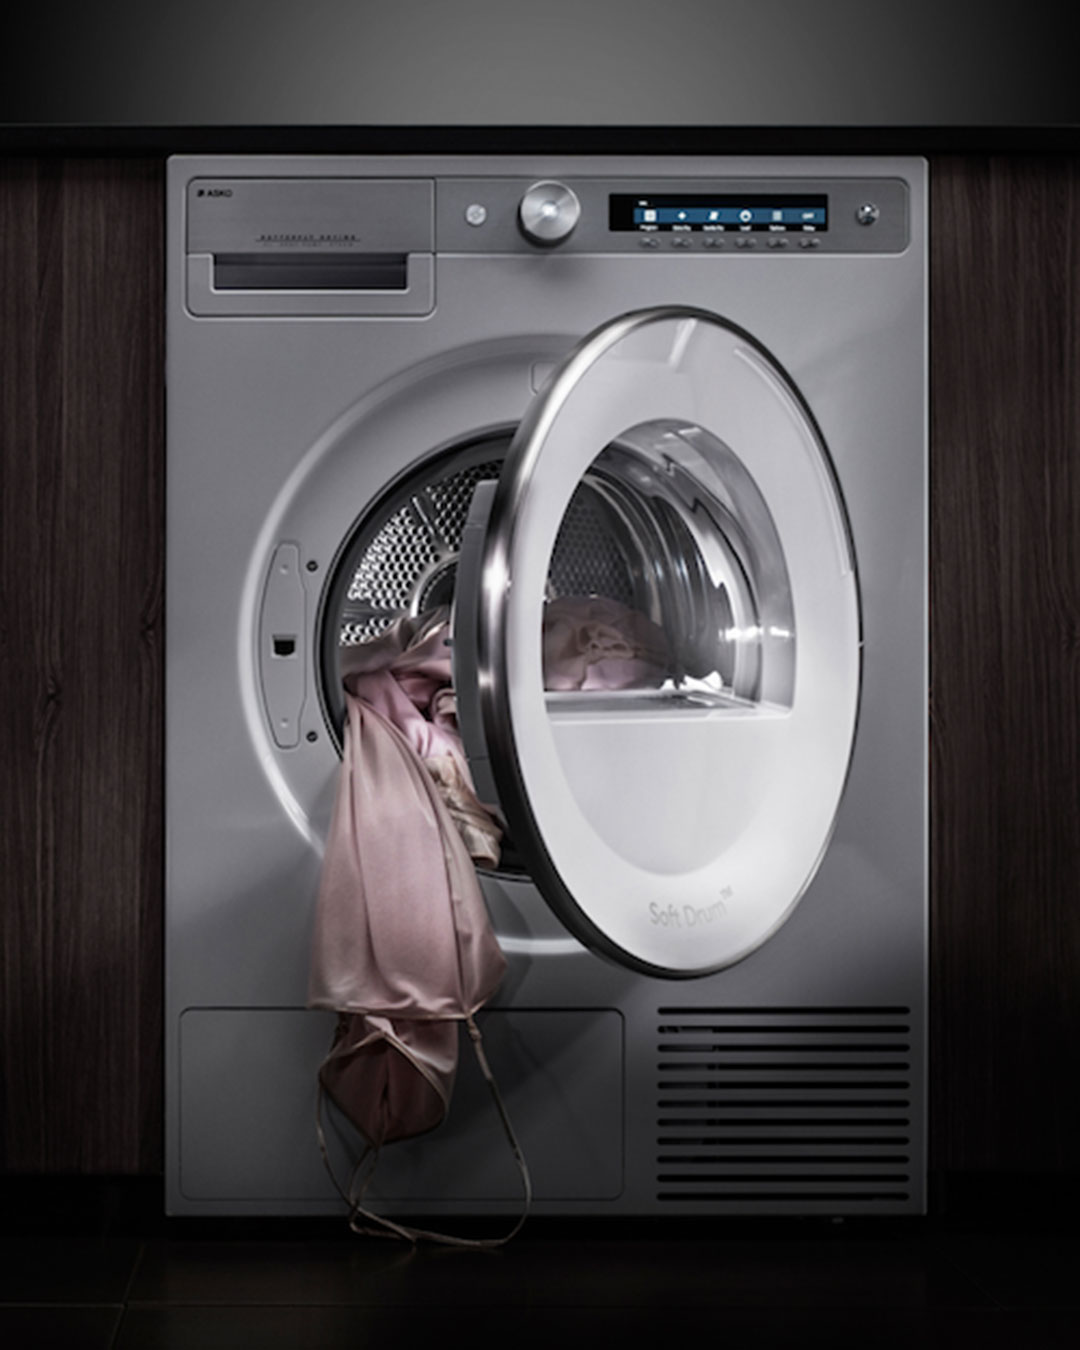 ASKO-Laundry-Key-Clean-Secrets-Inspired-Design-resized-mobile.jpg